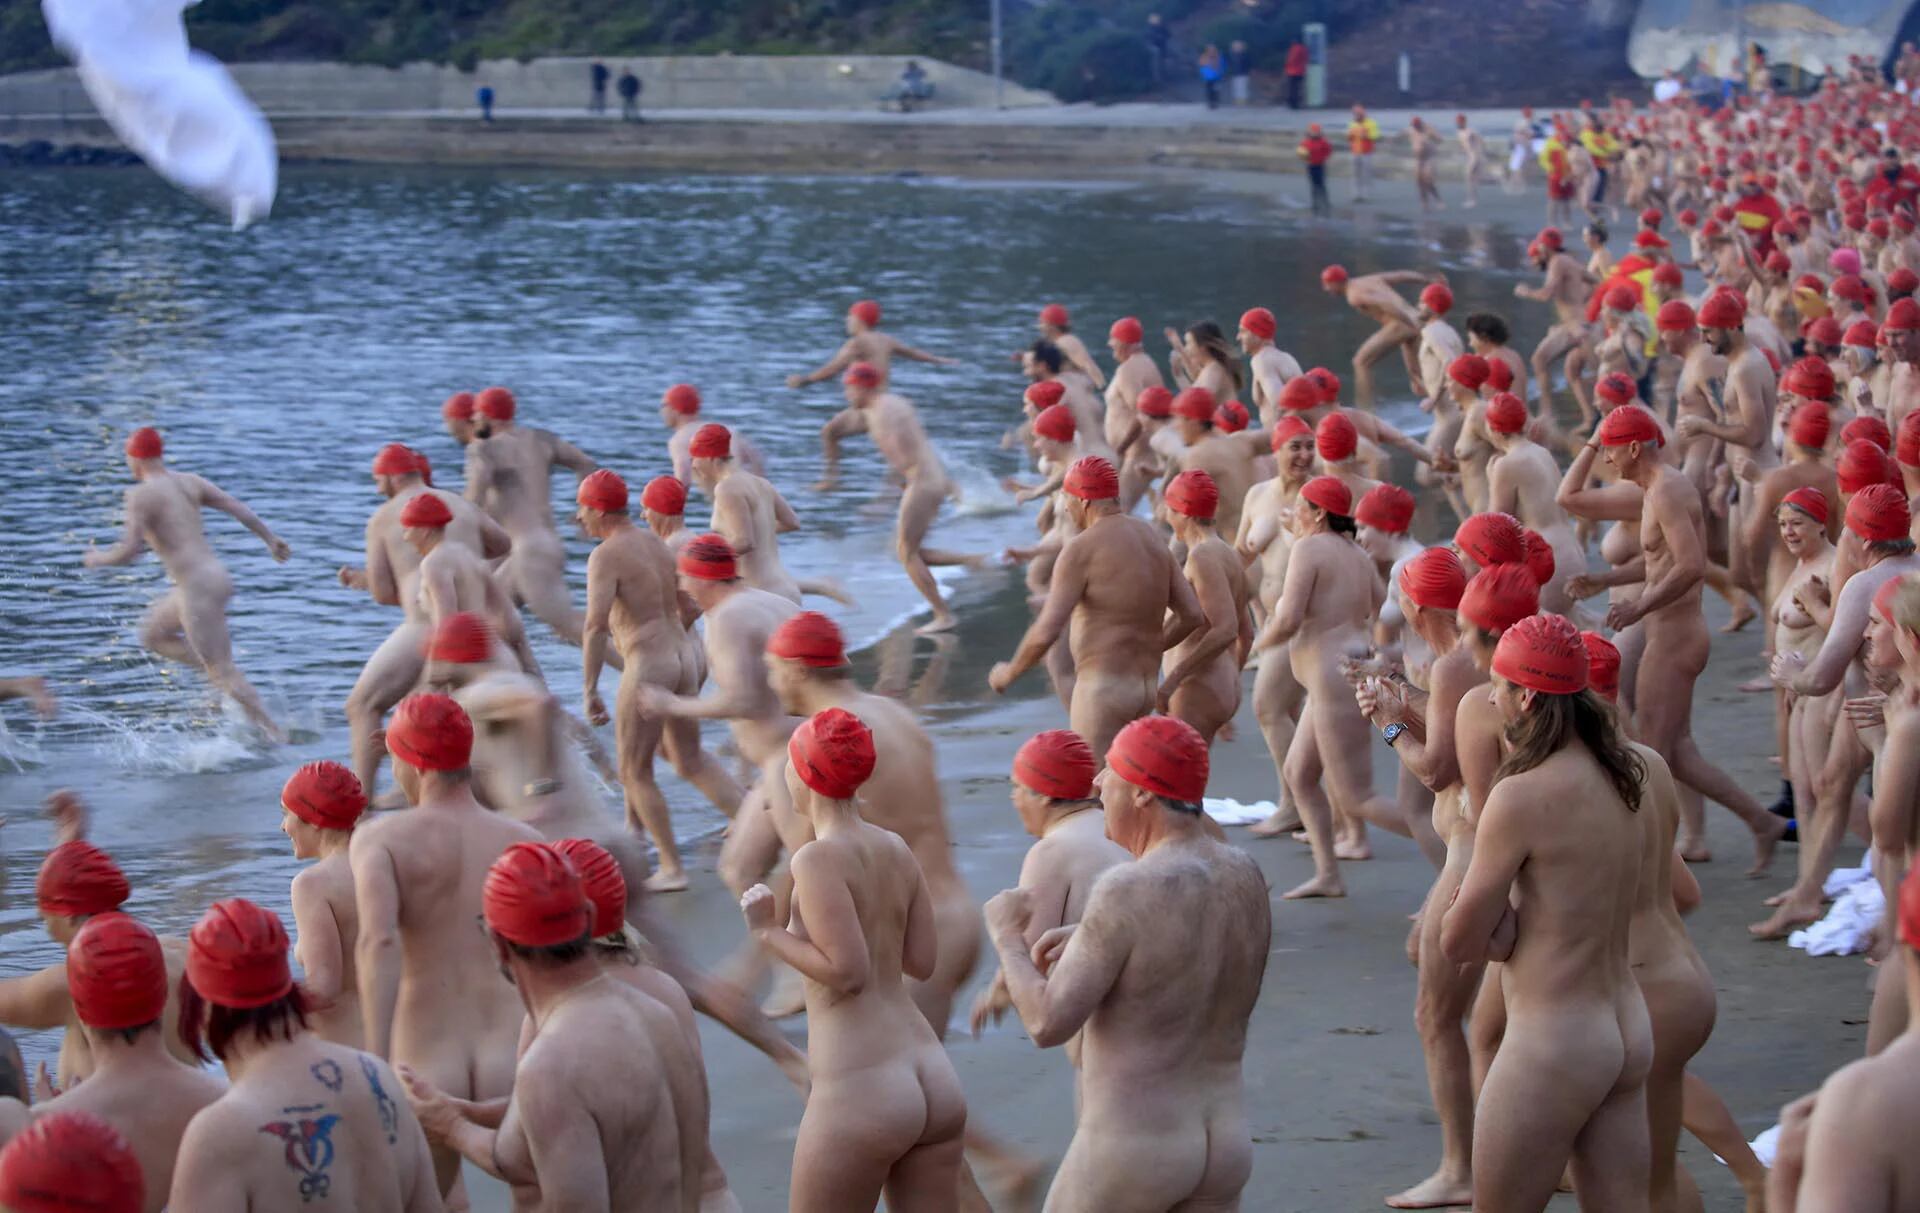 Participantes se preparan para el Nude Solstice Swim, como parte del festival de invierno Dark Mofo, en el río Derwent en Hobart, Tasmania, Australia